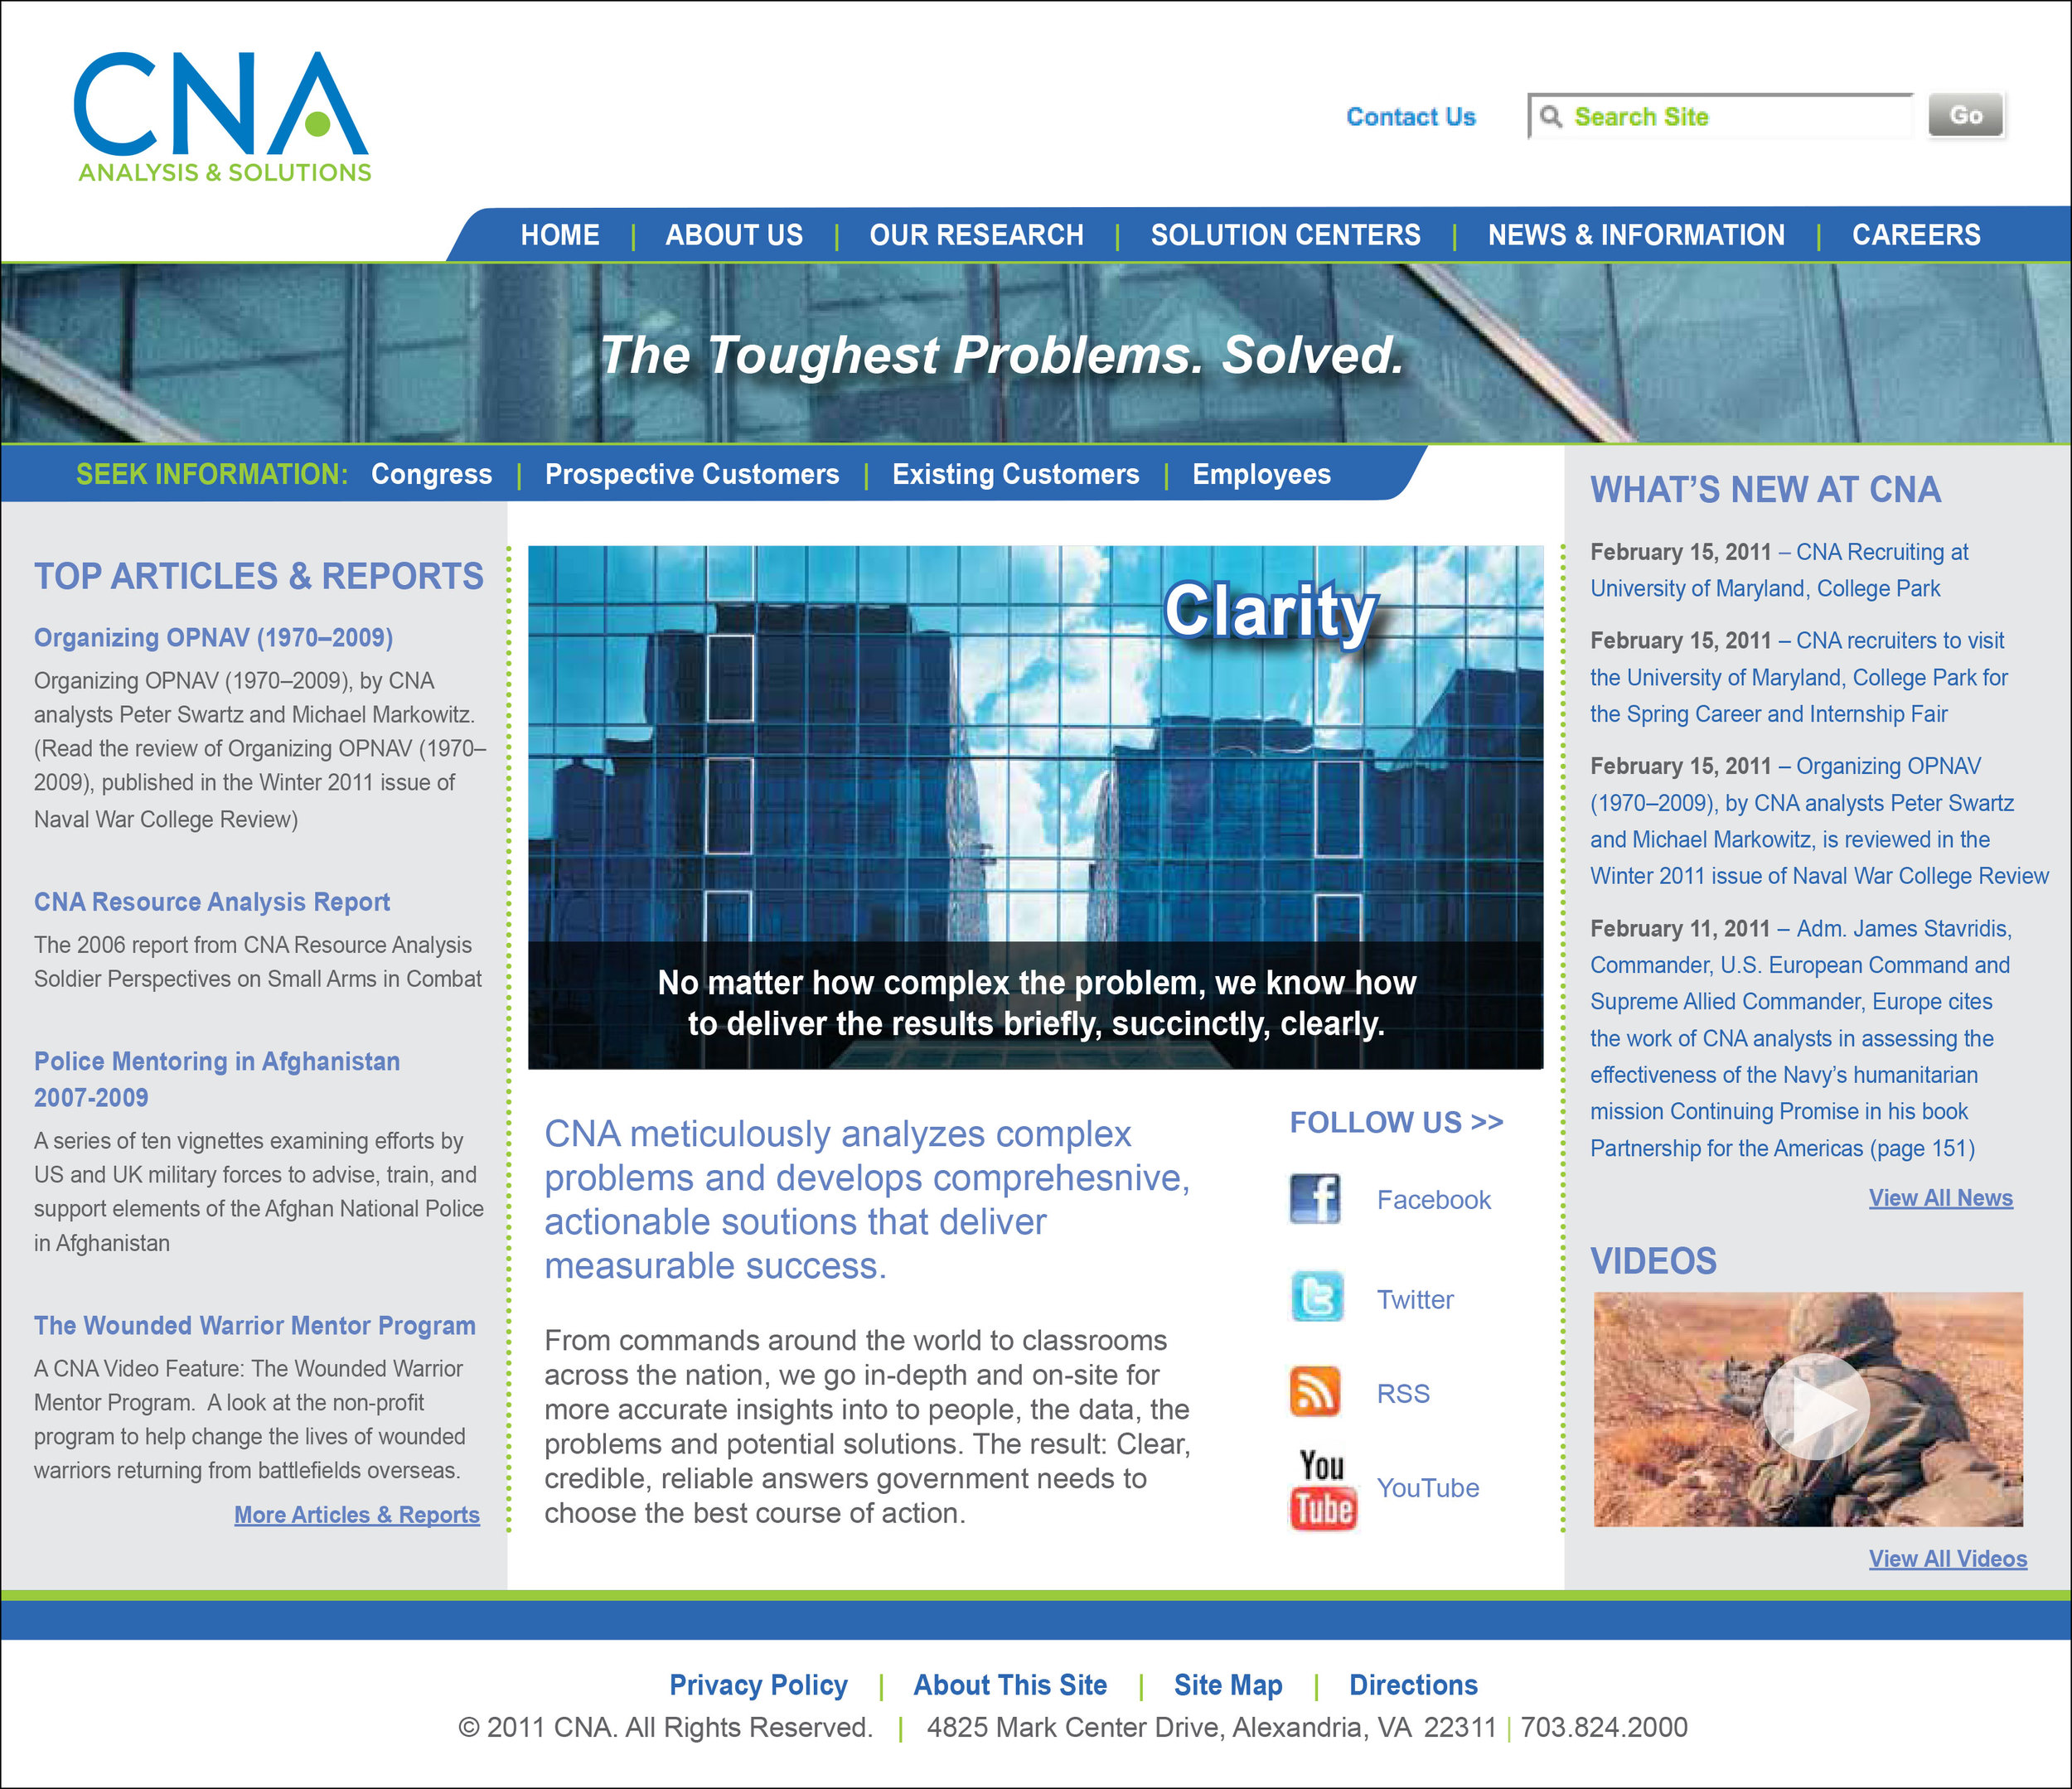 CNA Website Design